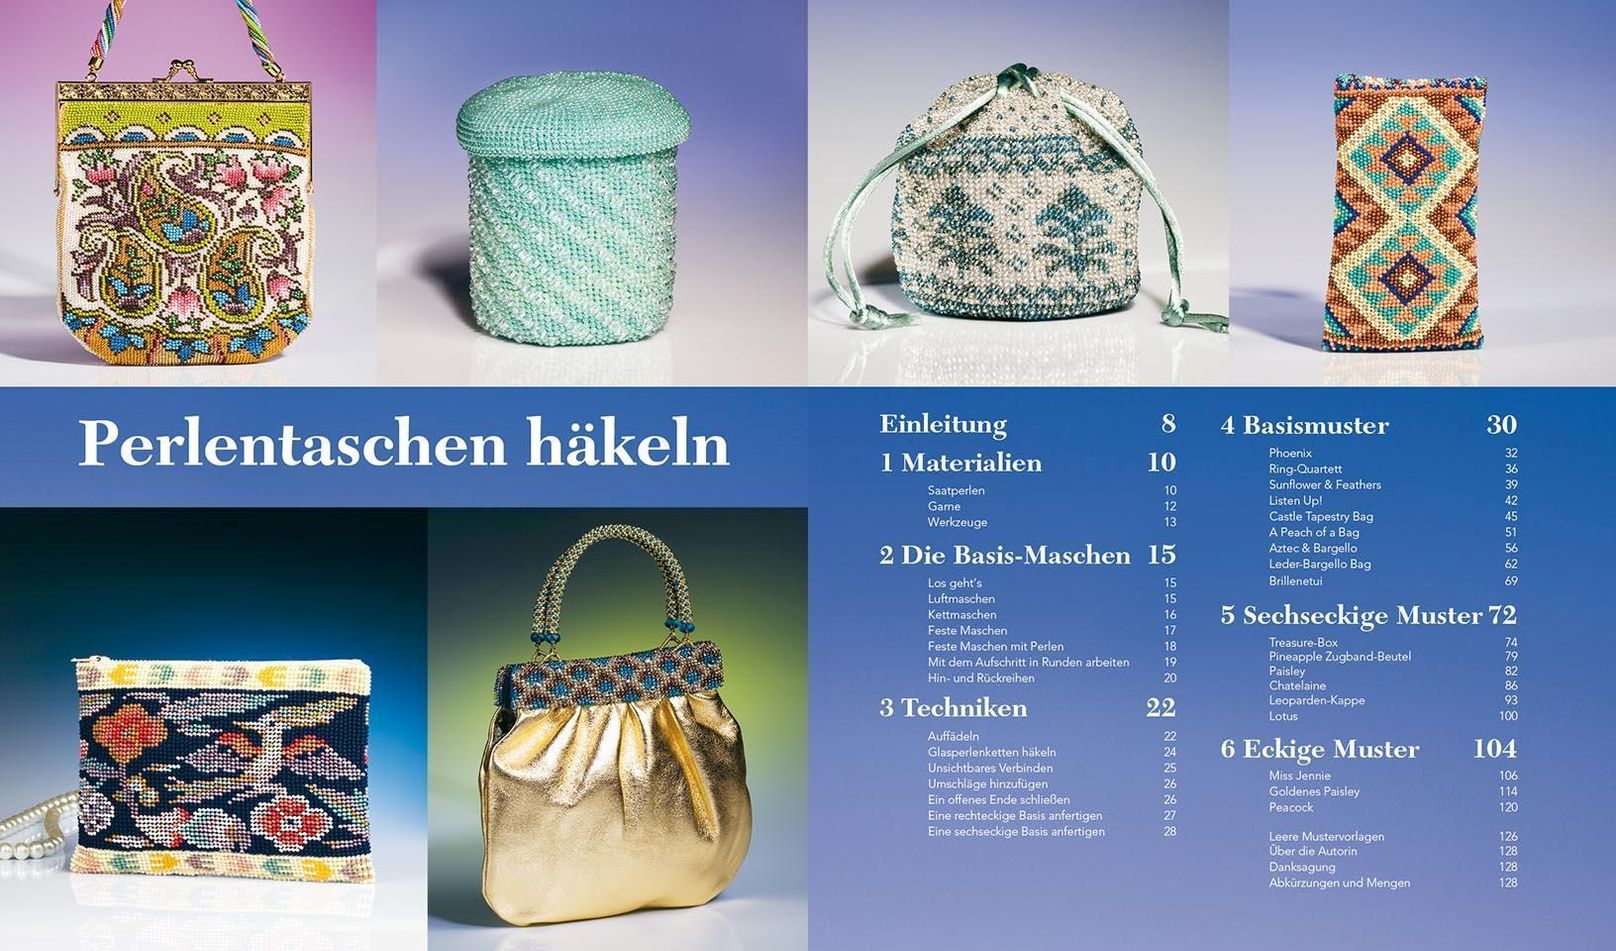 Perlentaschen häkeln Buch von Ann Benson versandkostenfrei - Weltbild.de